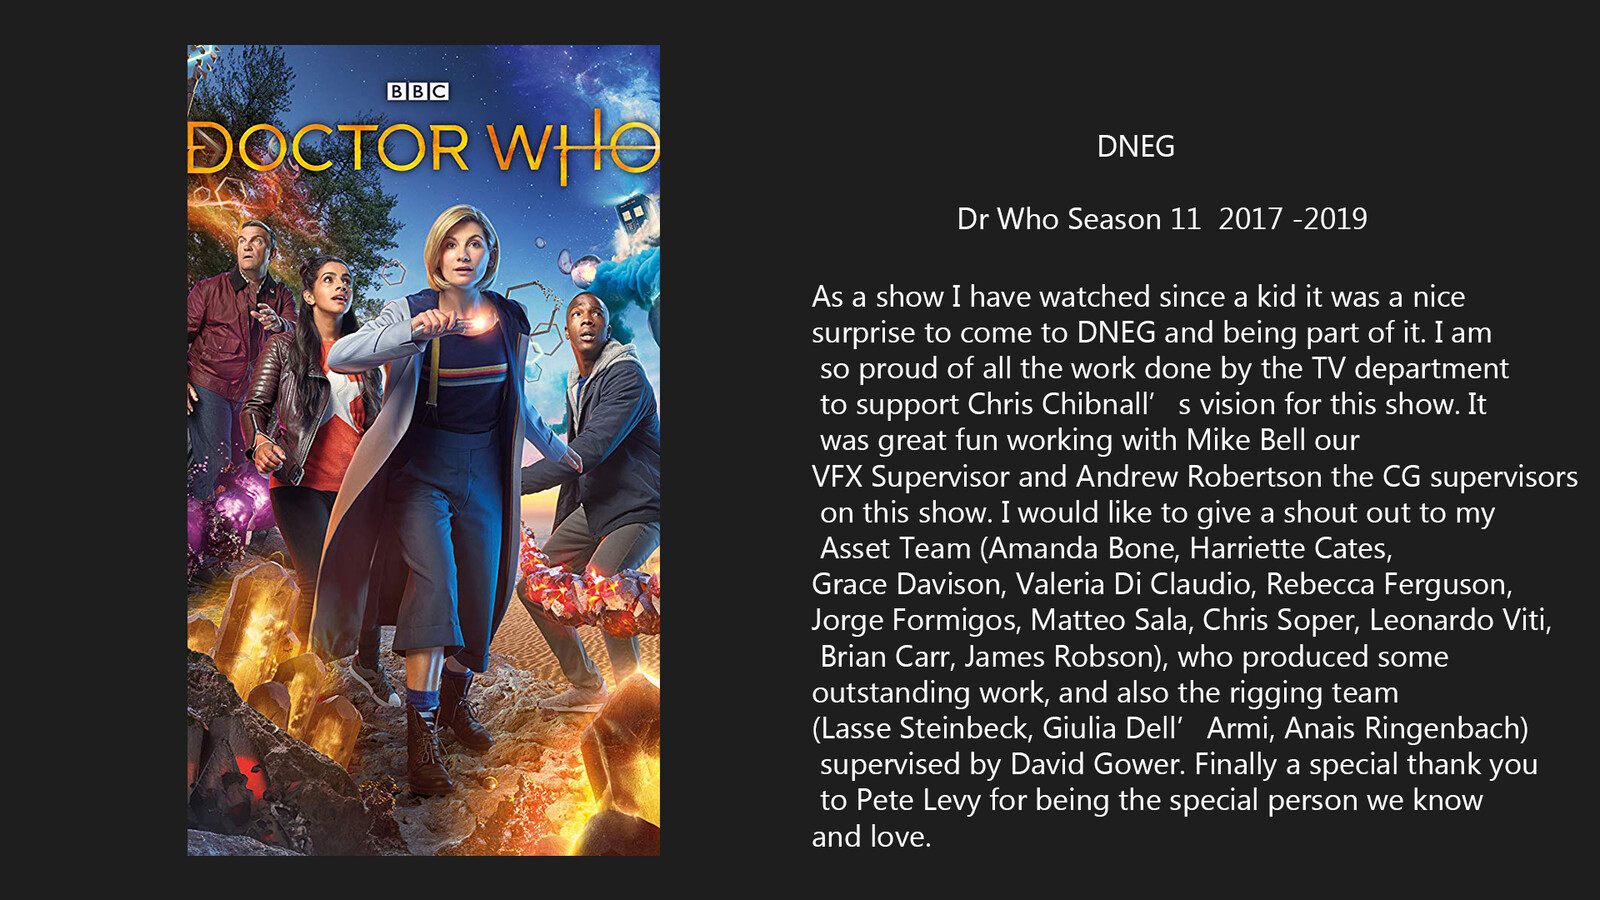 Dr Who season 11